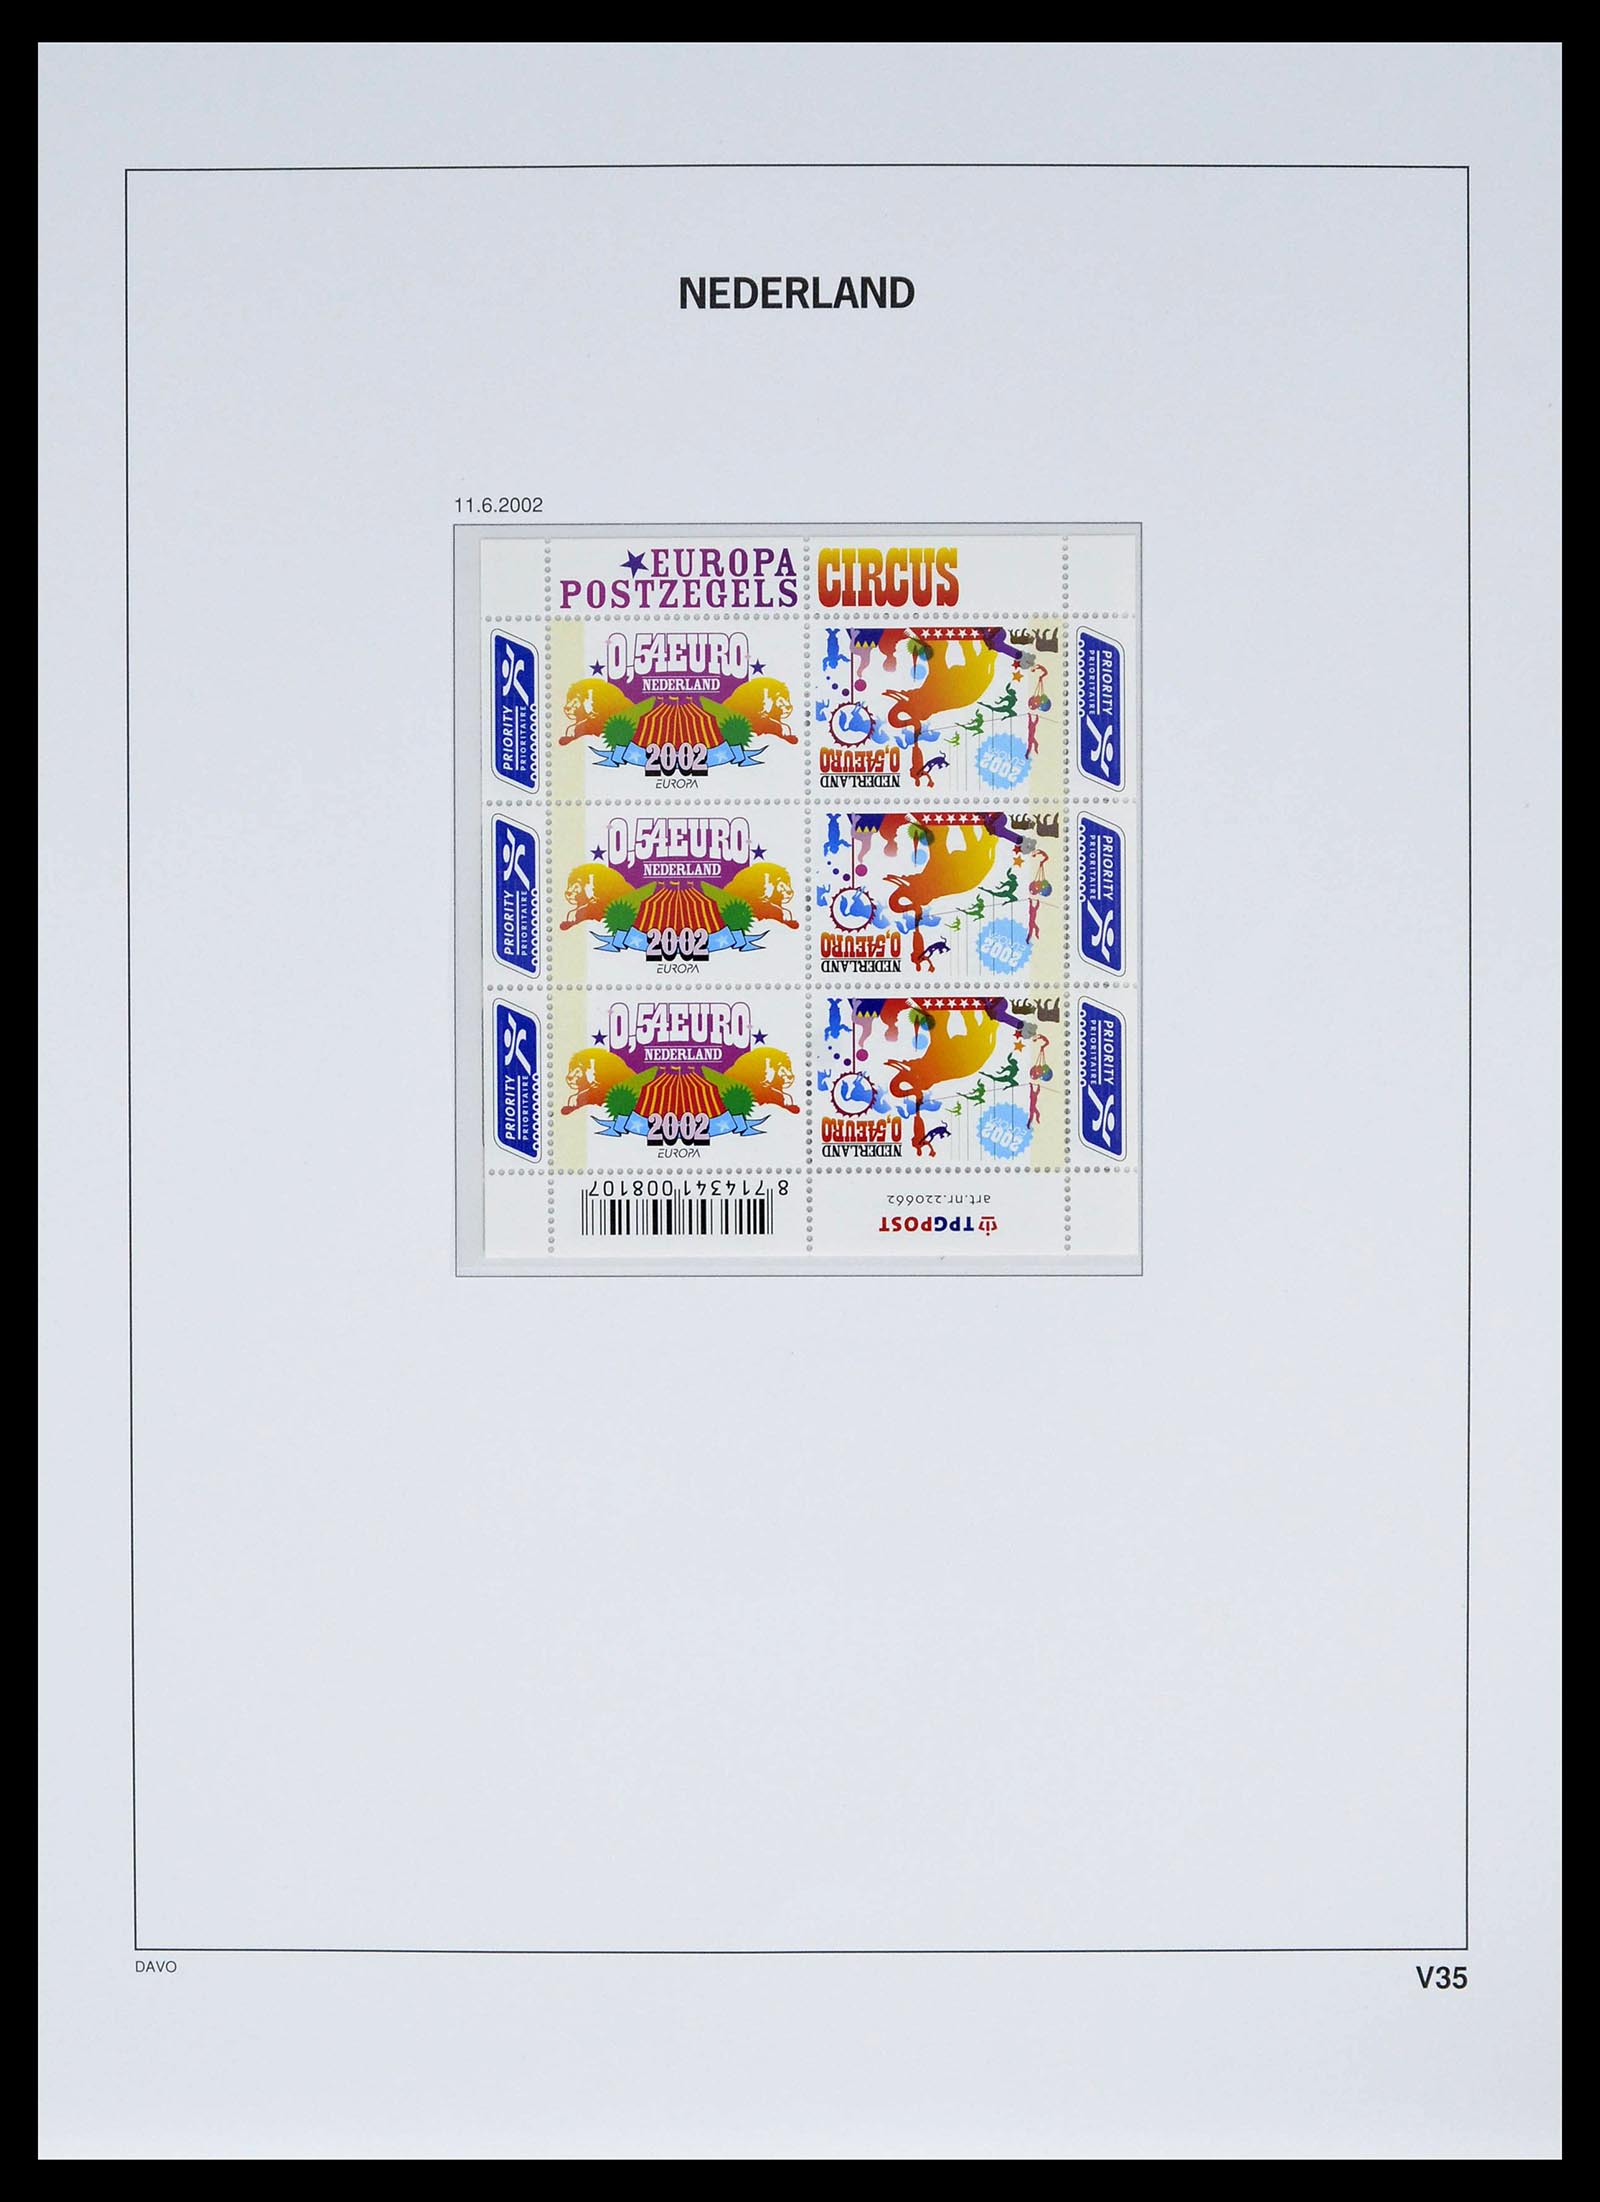 39134 0047 - Stamp collection 39134 Netherlands sheetlets 1992-2019!